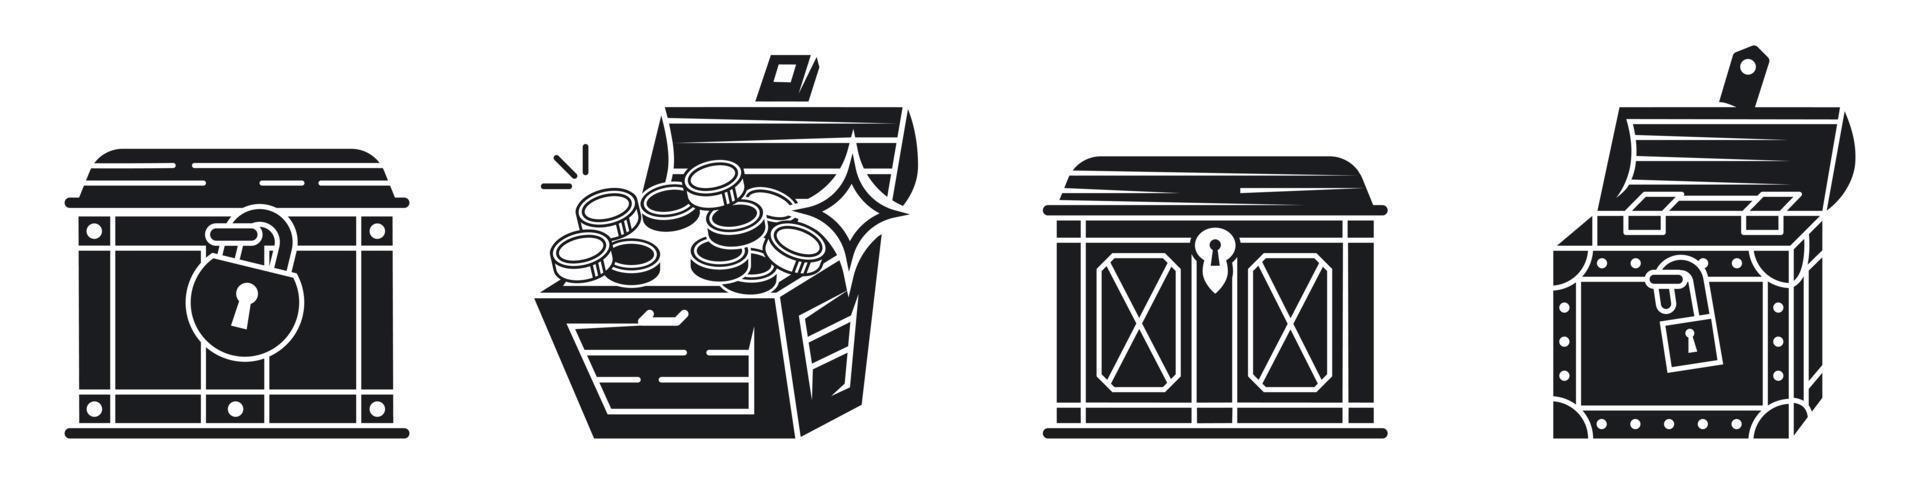 conjunto de ícones de baú de dote, estilo simples vetor